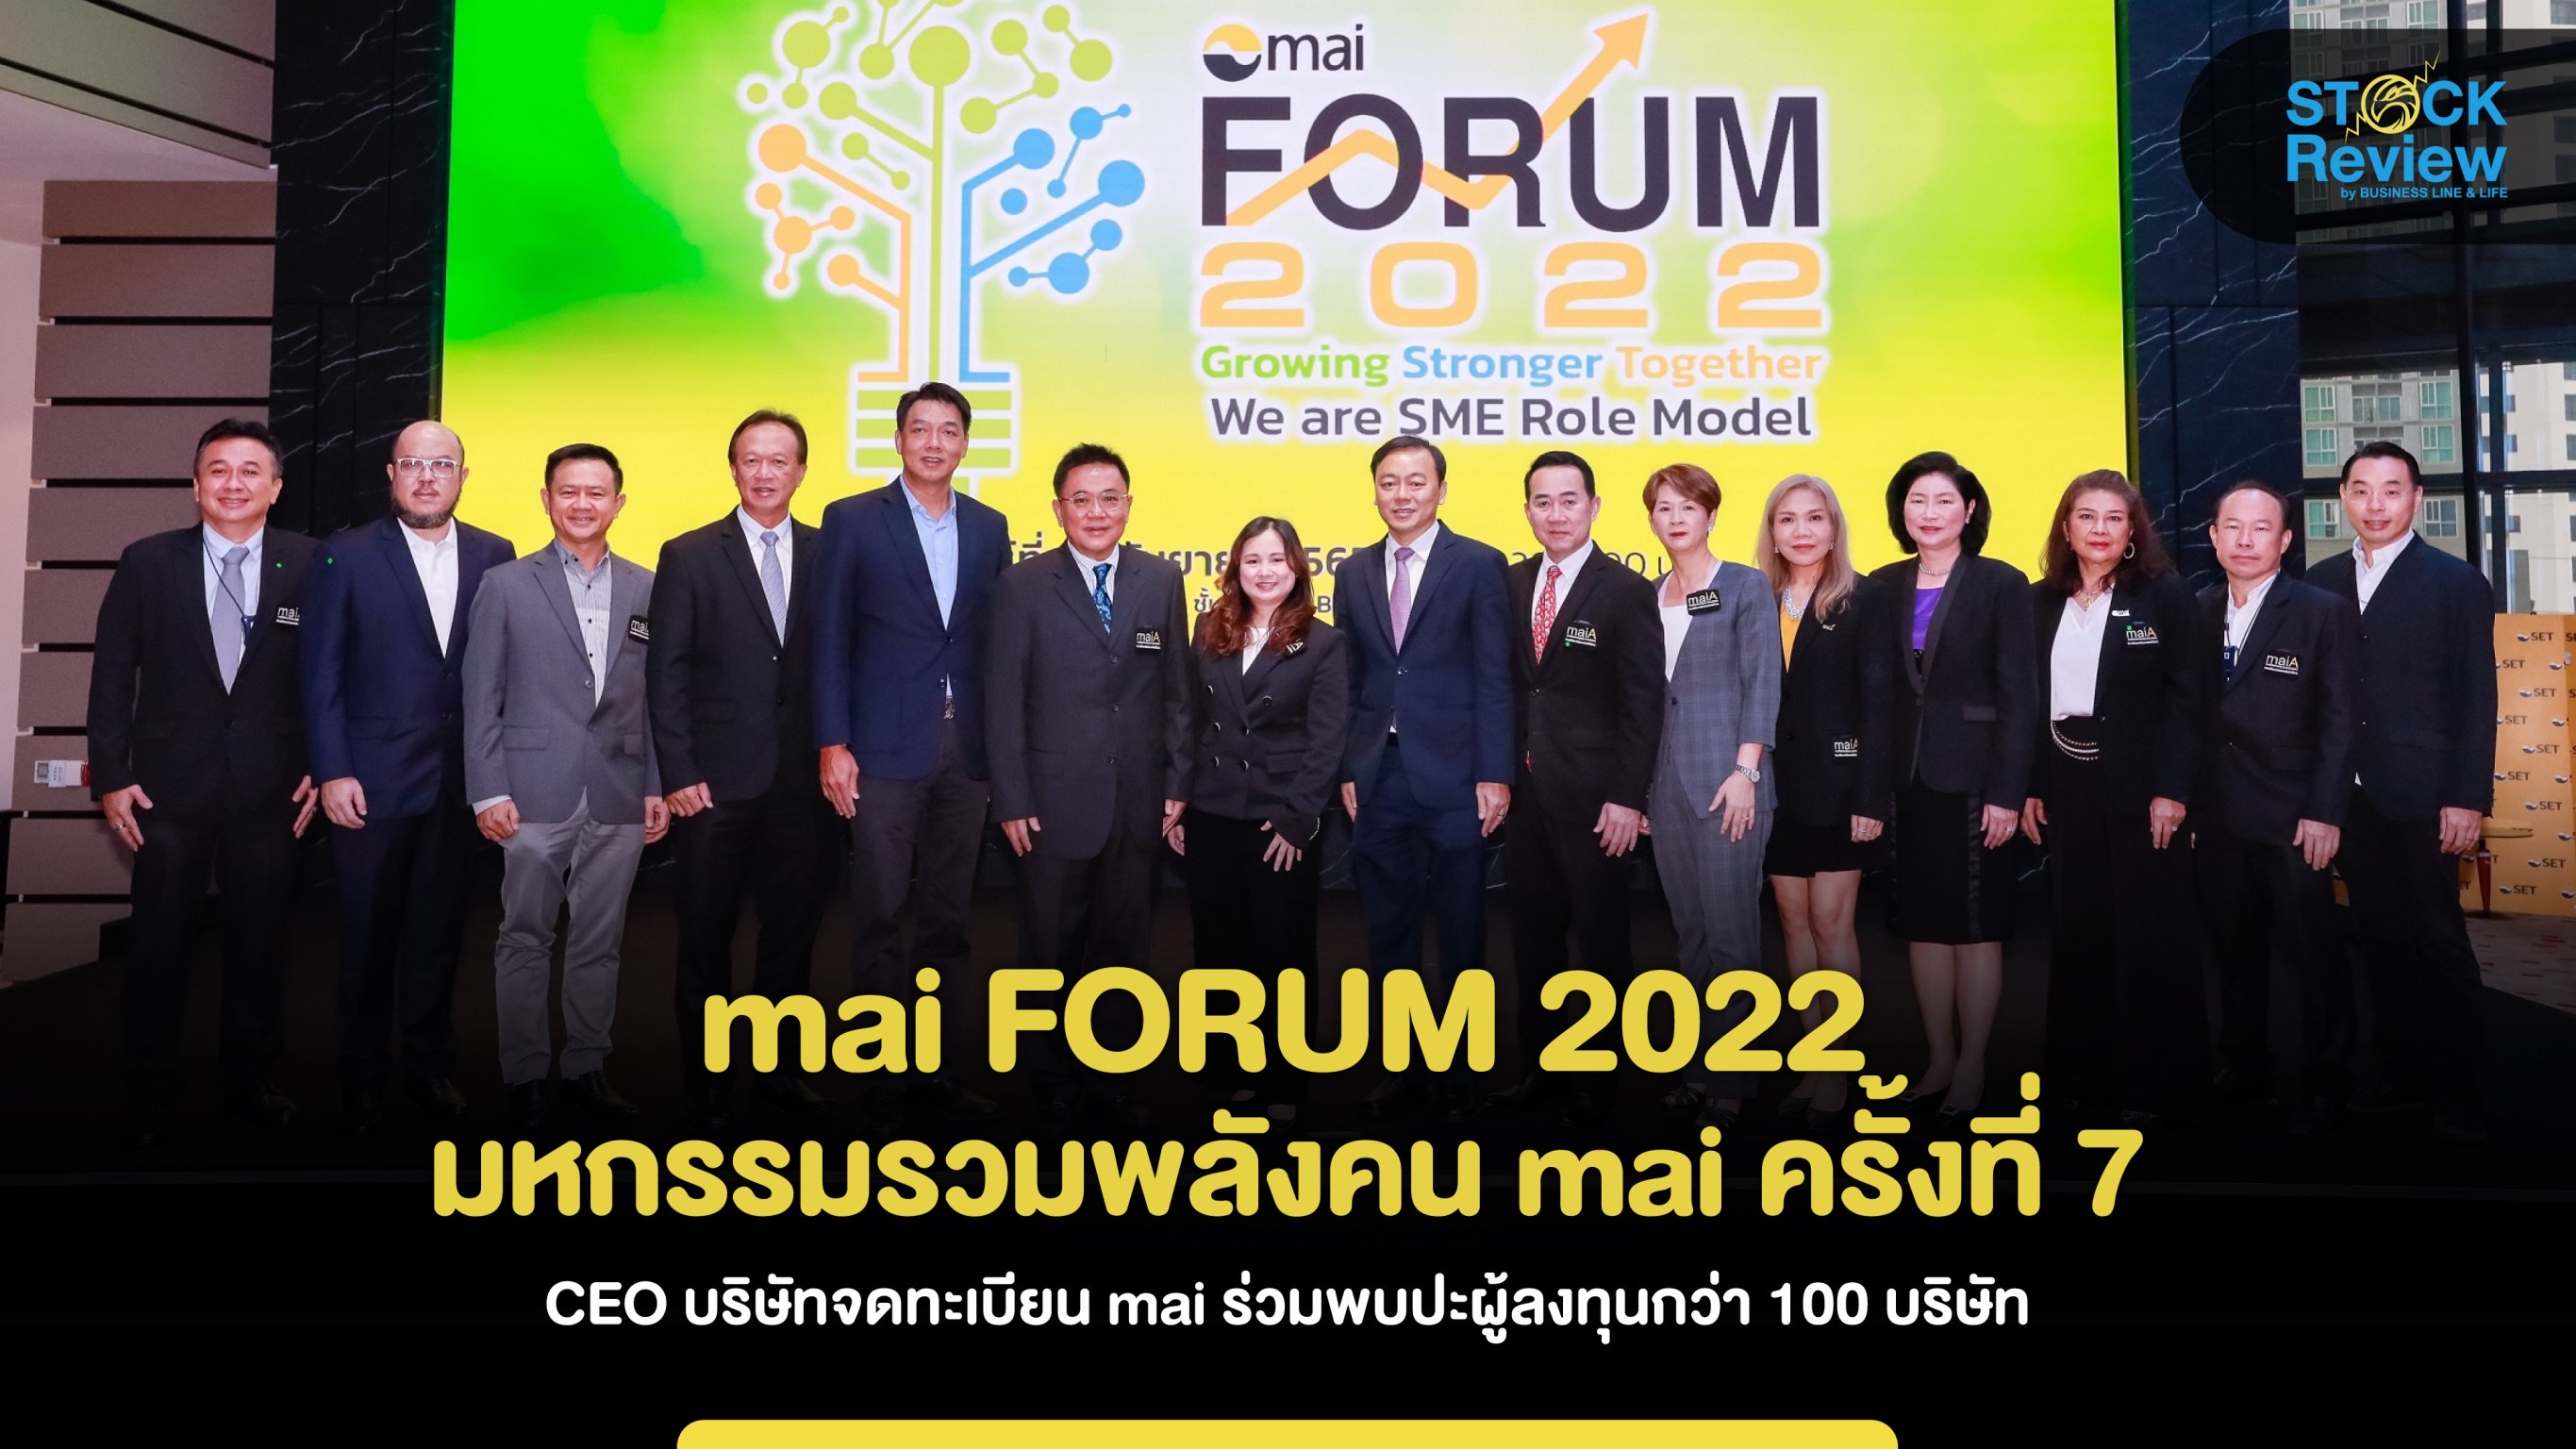 mai FORUM 2022 มหกรรมรวมพลังคน mai ครั้งที่ 7   CEO บจ. mai ร่วมพบปะผู้ลงทุนกว่า 100 บริษัท  28 ต.ค นี้